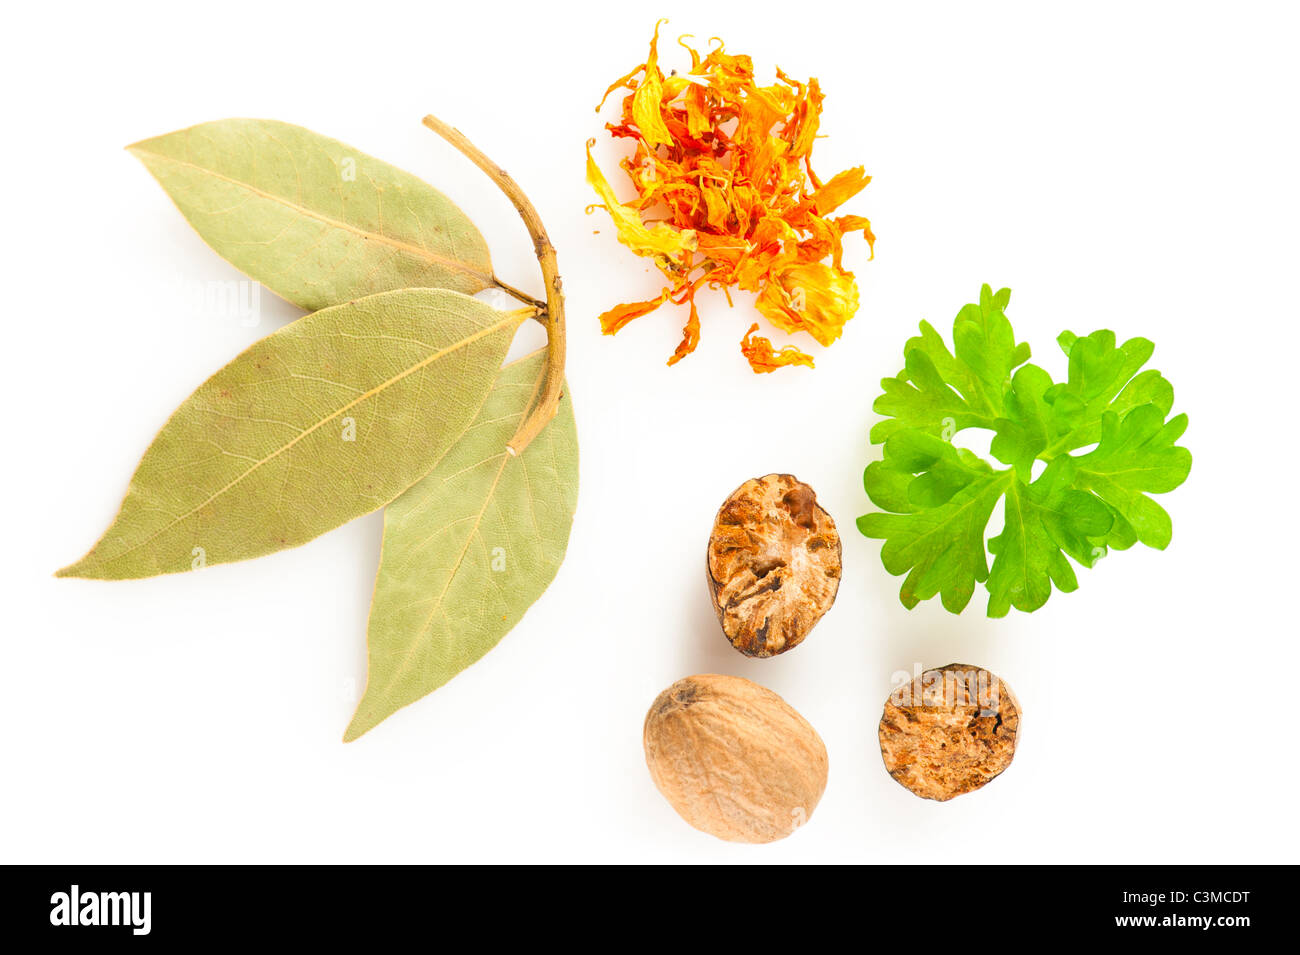 Les épices. Mélange de différentes plantes : le safran, le laurier, la muscade et le persil frais sur fond blanc Banque D'Images